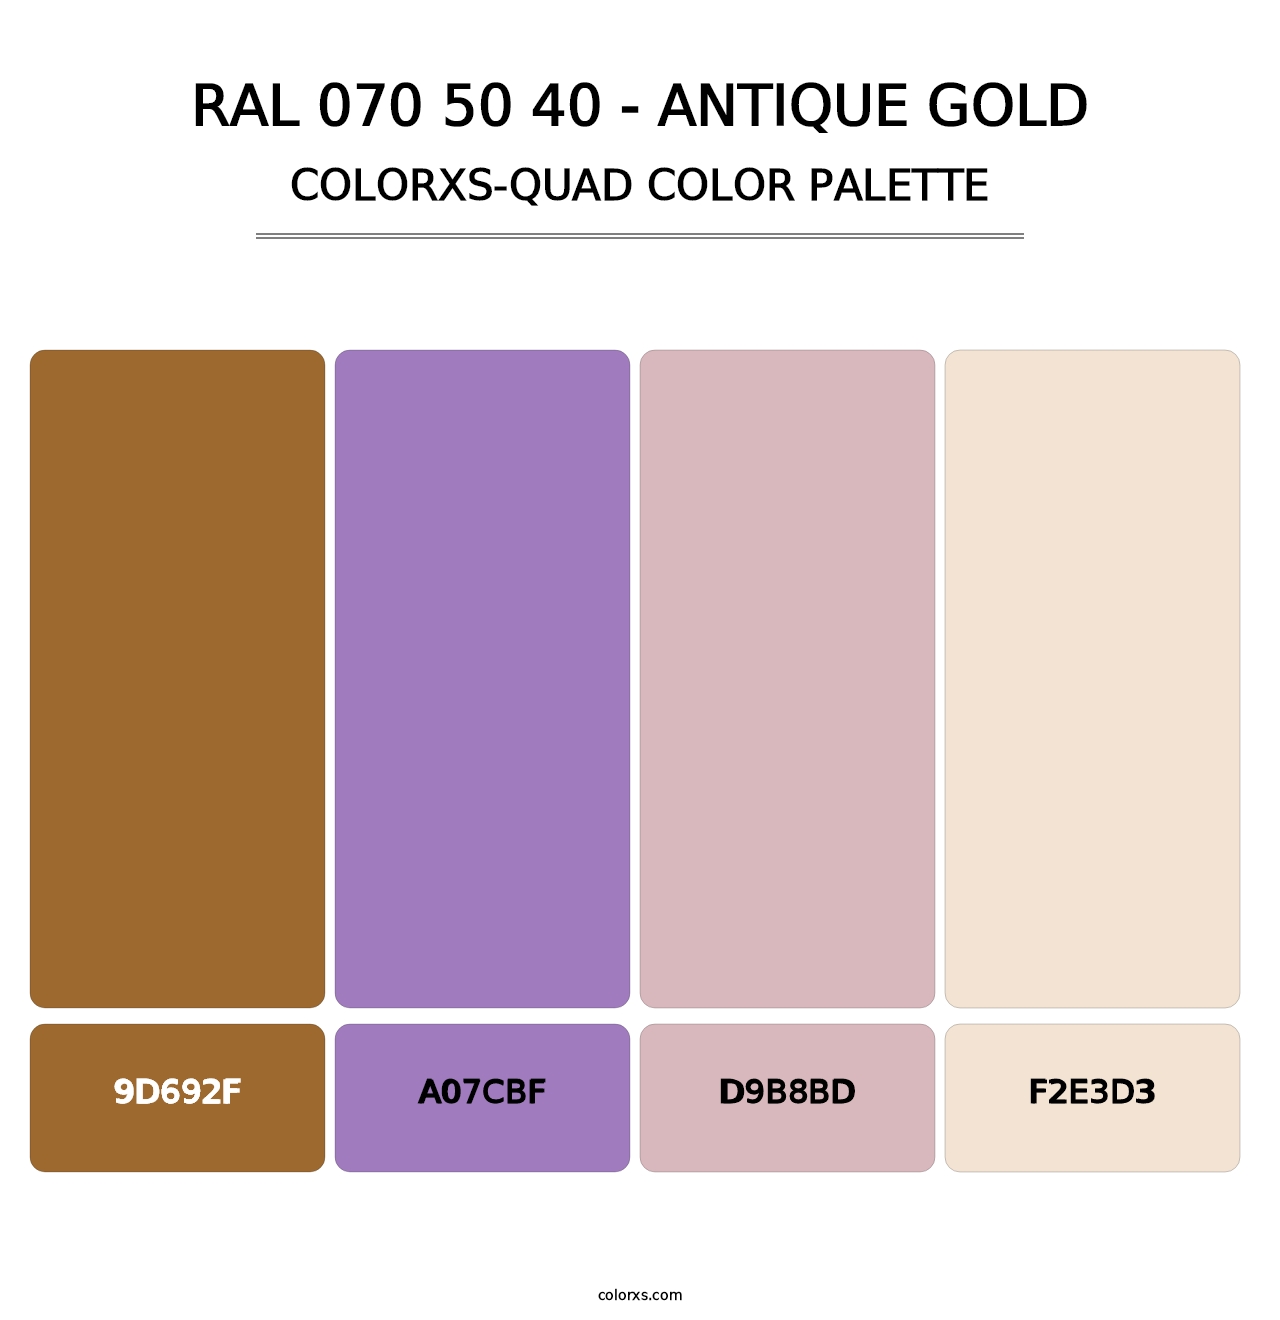 RAL 070 50 40 - Antique Gold - Colorxs Quad Palette